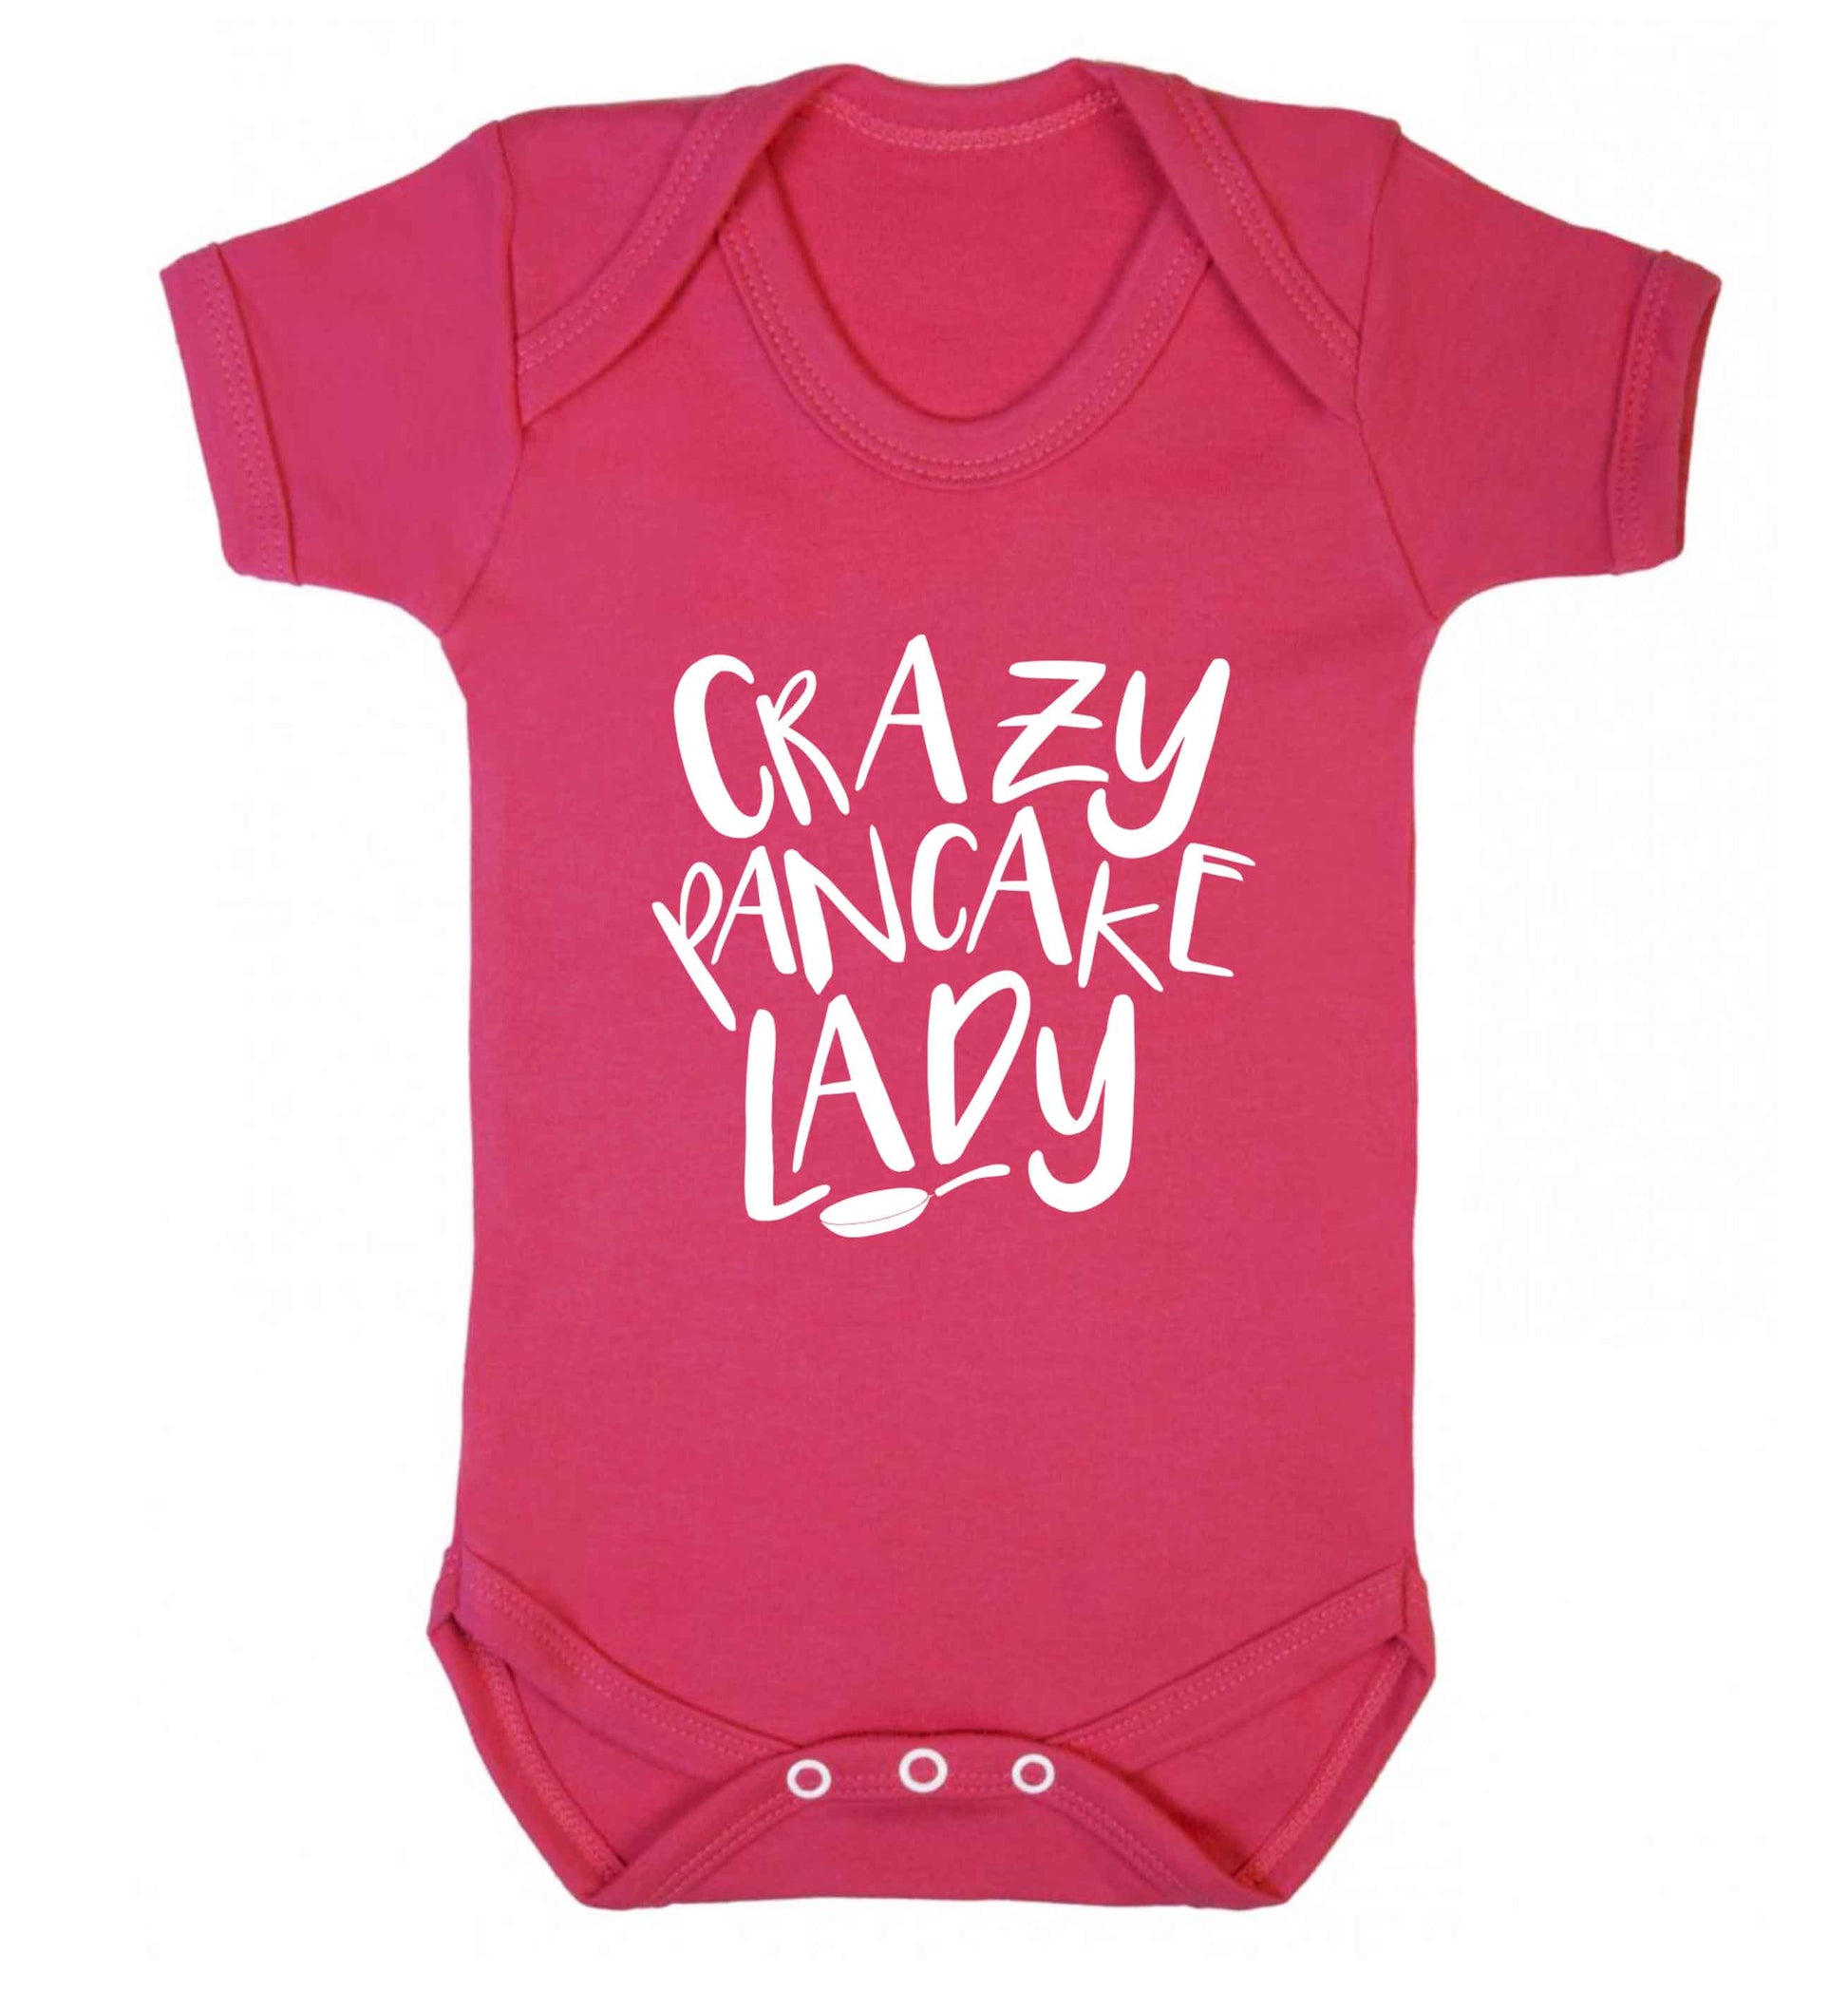 Crazy pancake lady baby vest dark pink 18-24 months